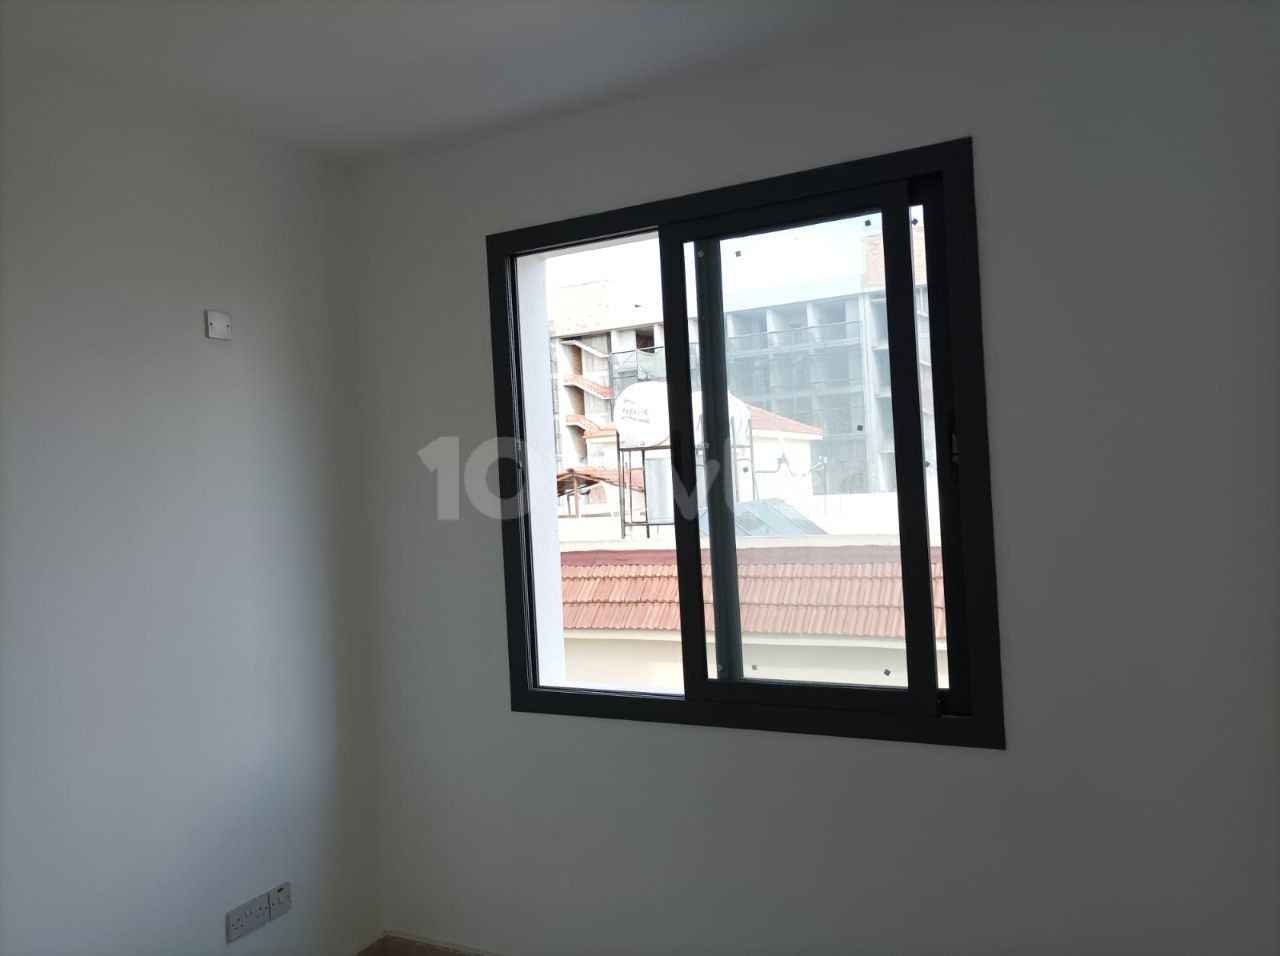 Investitionsmöglichkeit in Wohnungen im Küçük Kaymaklı-Gebiet mit 2+1 90 m² großen Innen- und Außenparkplätzen mit Aufzug